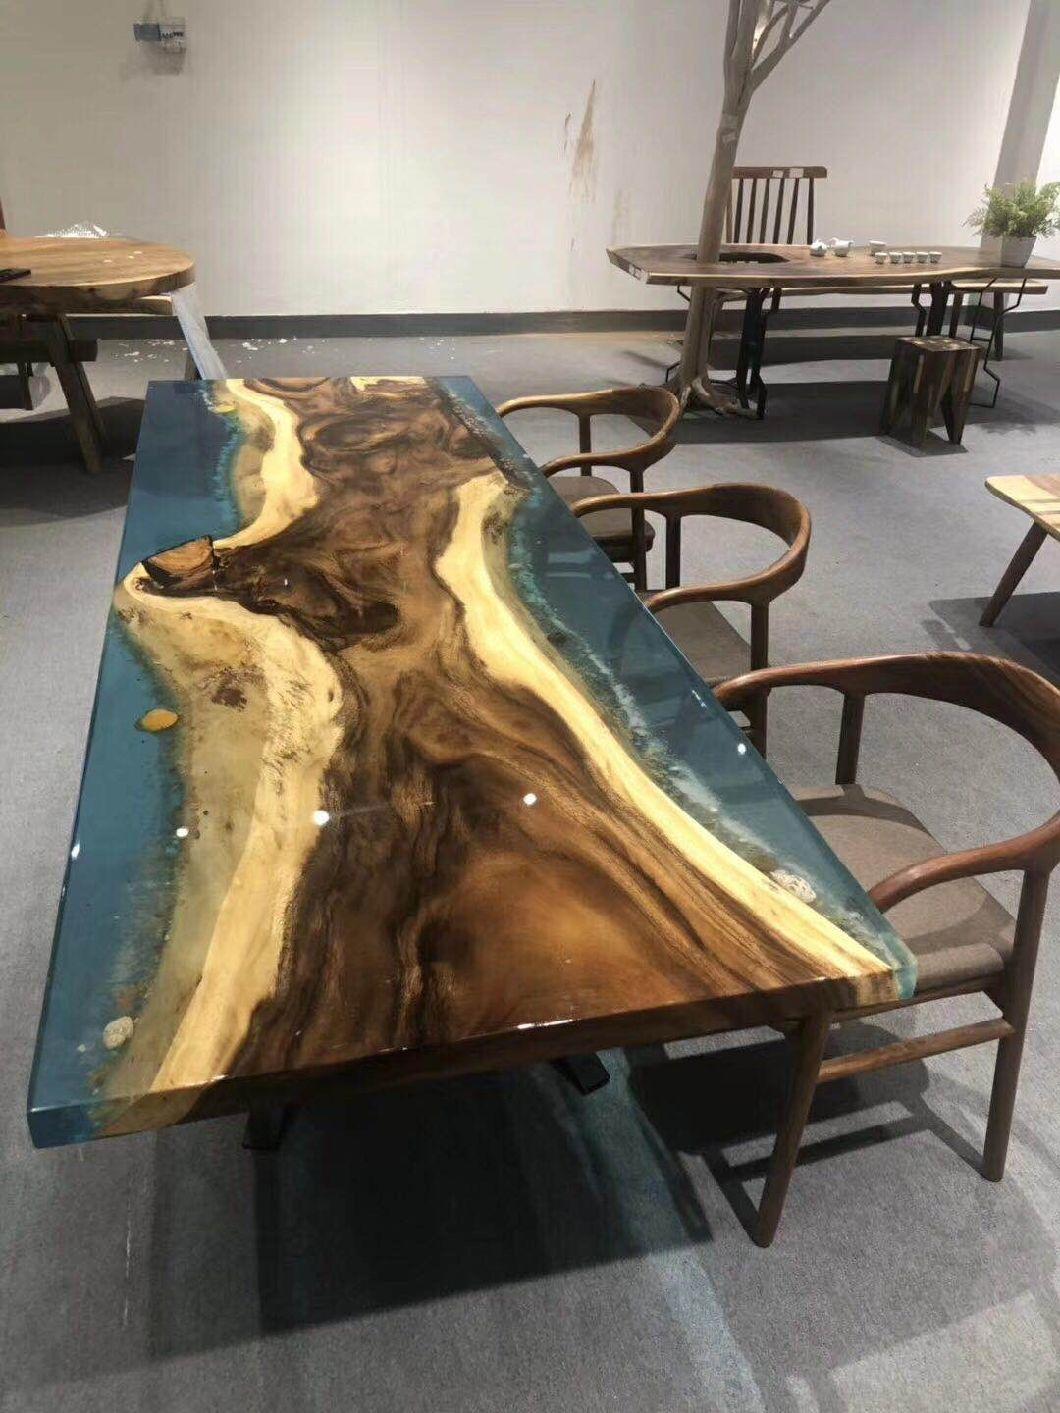 Resin +Wood Beach Style Tea Table